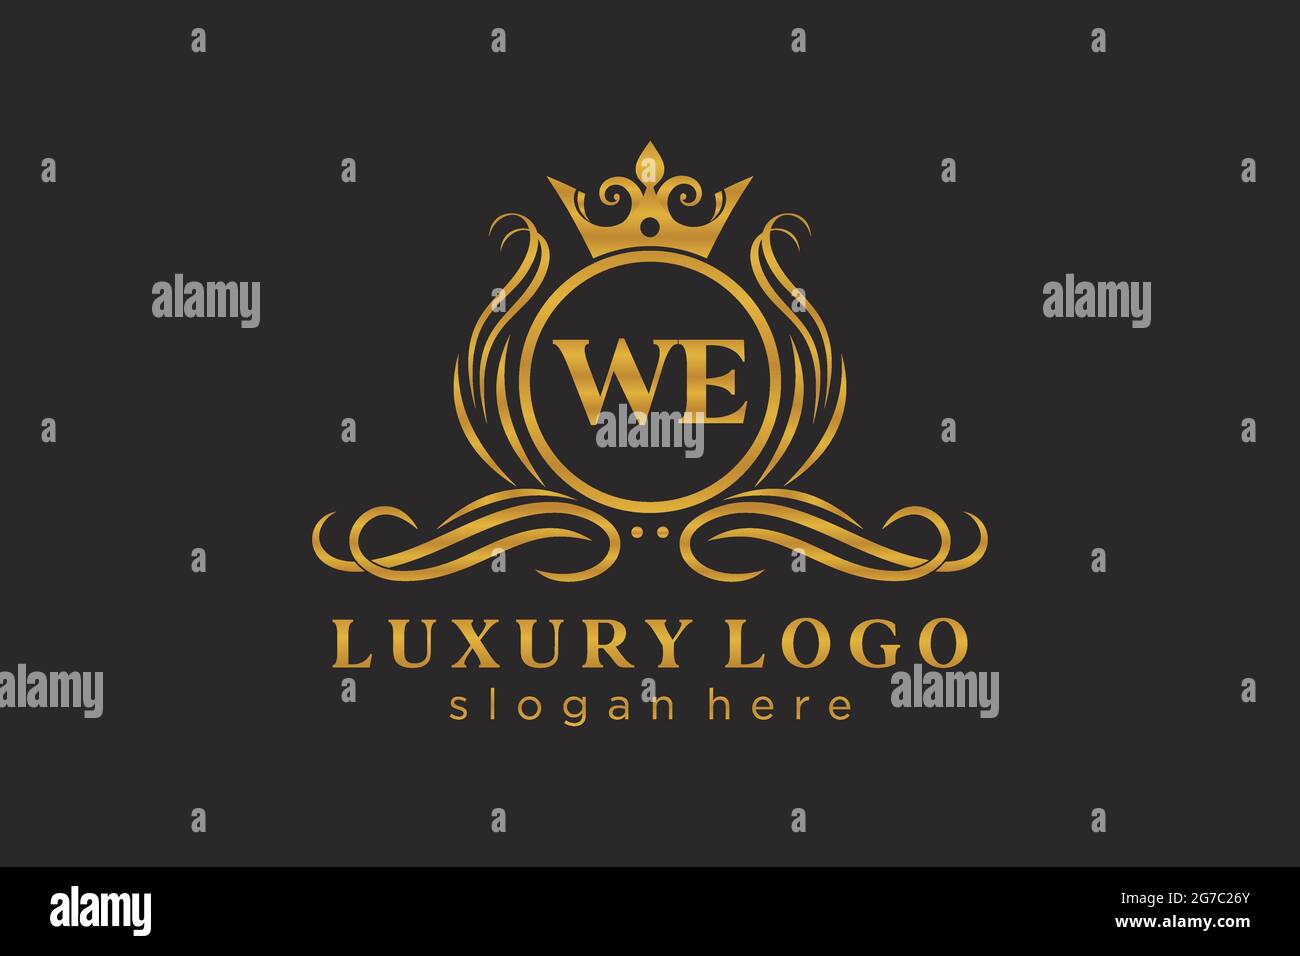 WIR schreiben Royal Luxury Logo Vorlage in Vektorgrafik für Restaurant, Royalty, Boutique, Cafe, Hotel, Heraldisch, Schmuck, Mode und andere Vektor illustrr Stock Vektor